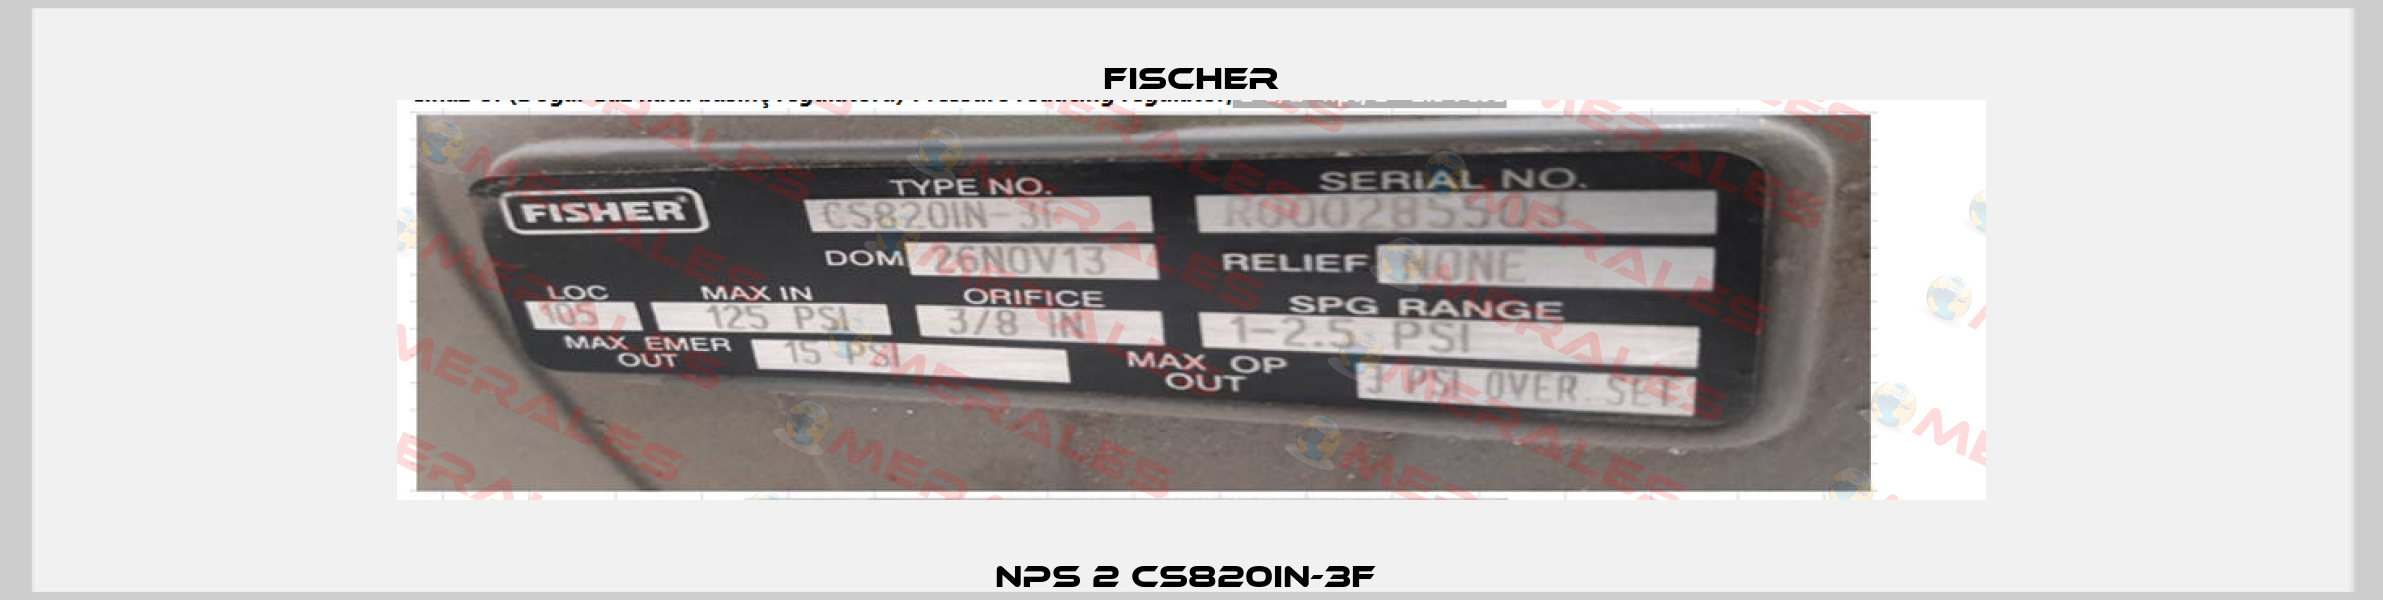 NPS 2 CS820IN-3F  Fischer